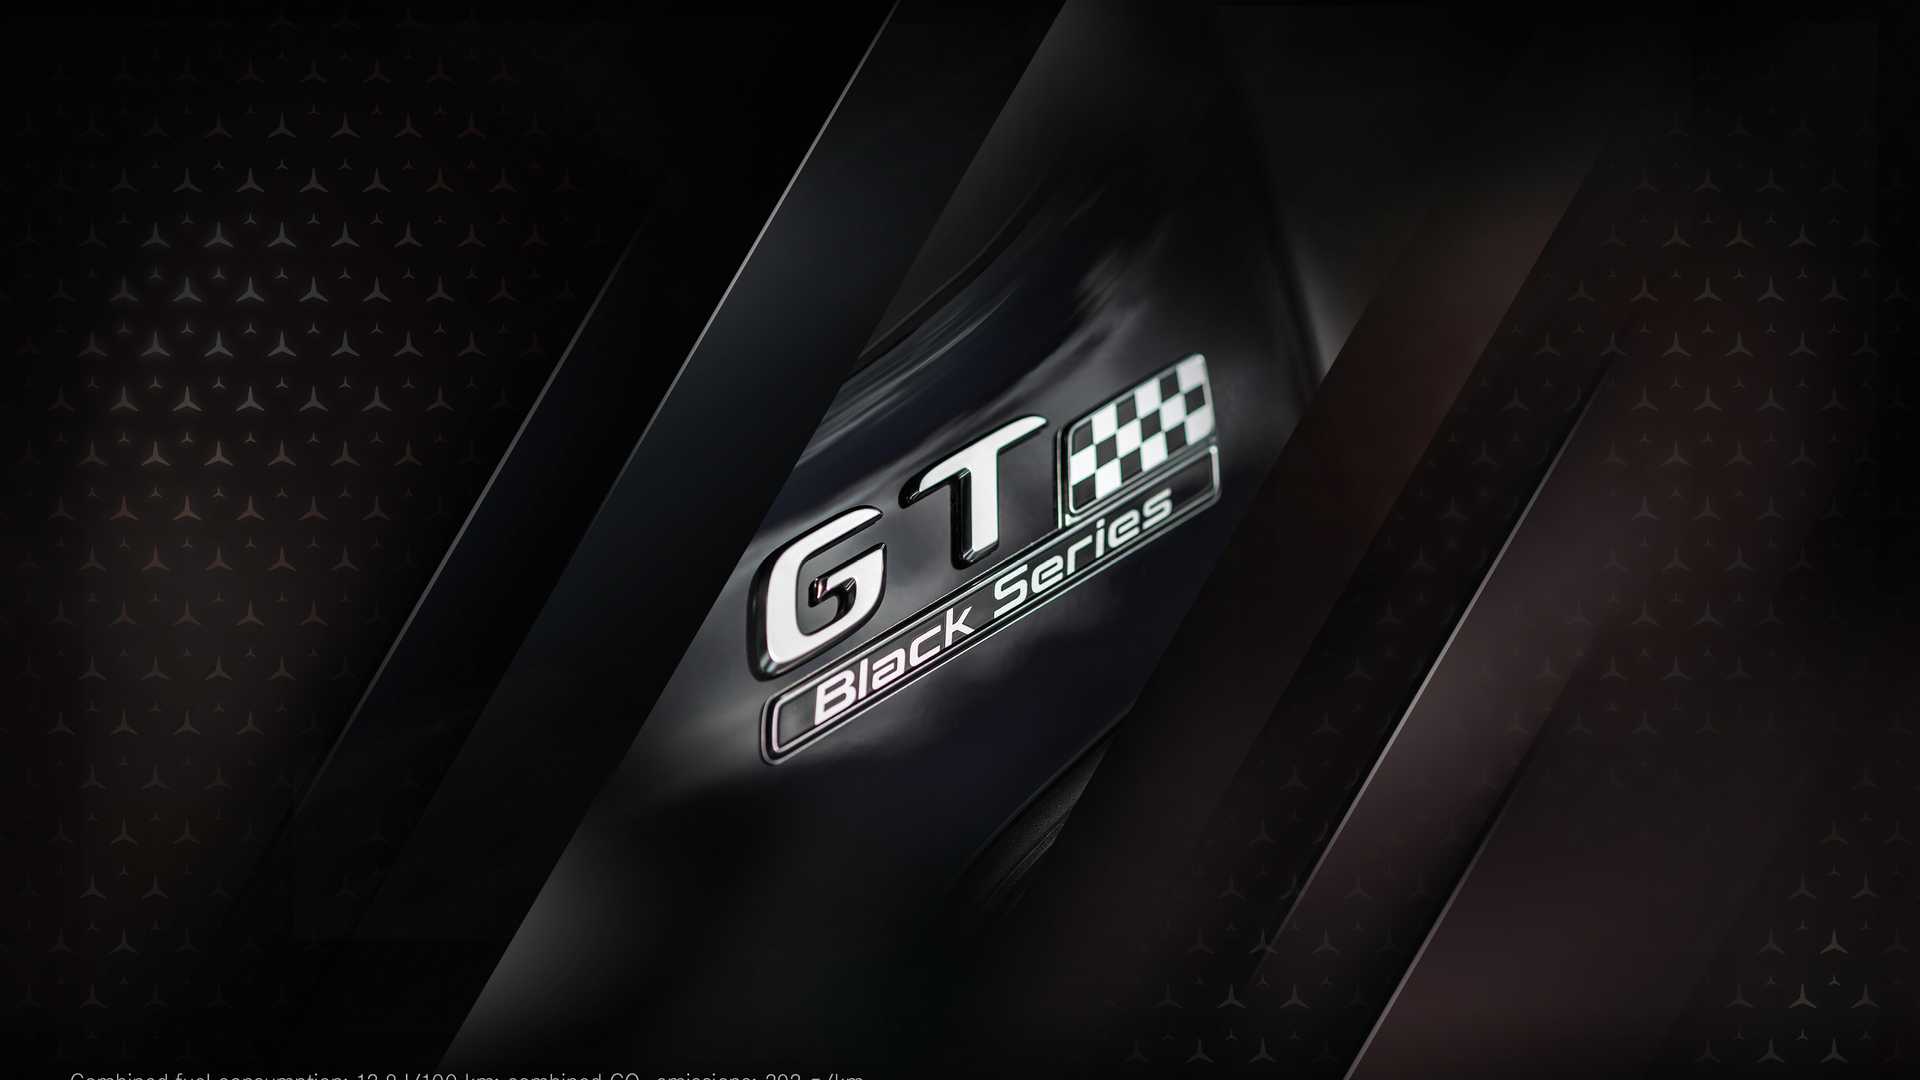 Экстремальное купе Mercedes-AMG GT Black Series: турбо V8 мощностью 730 л.с.  